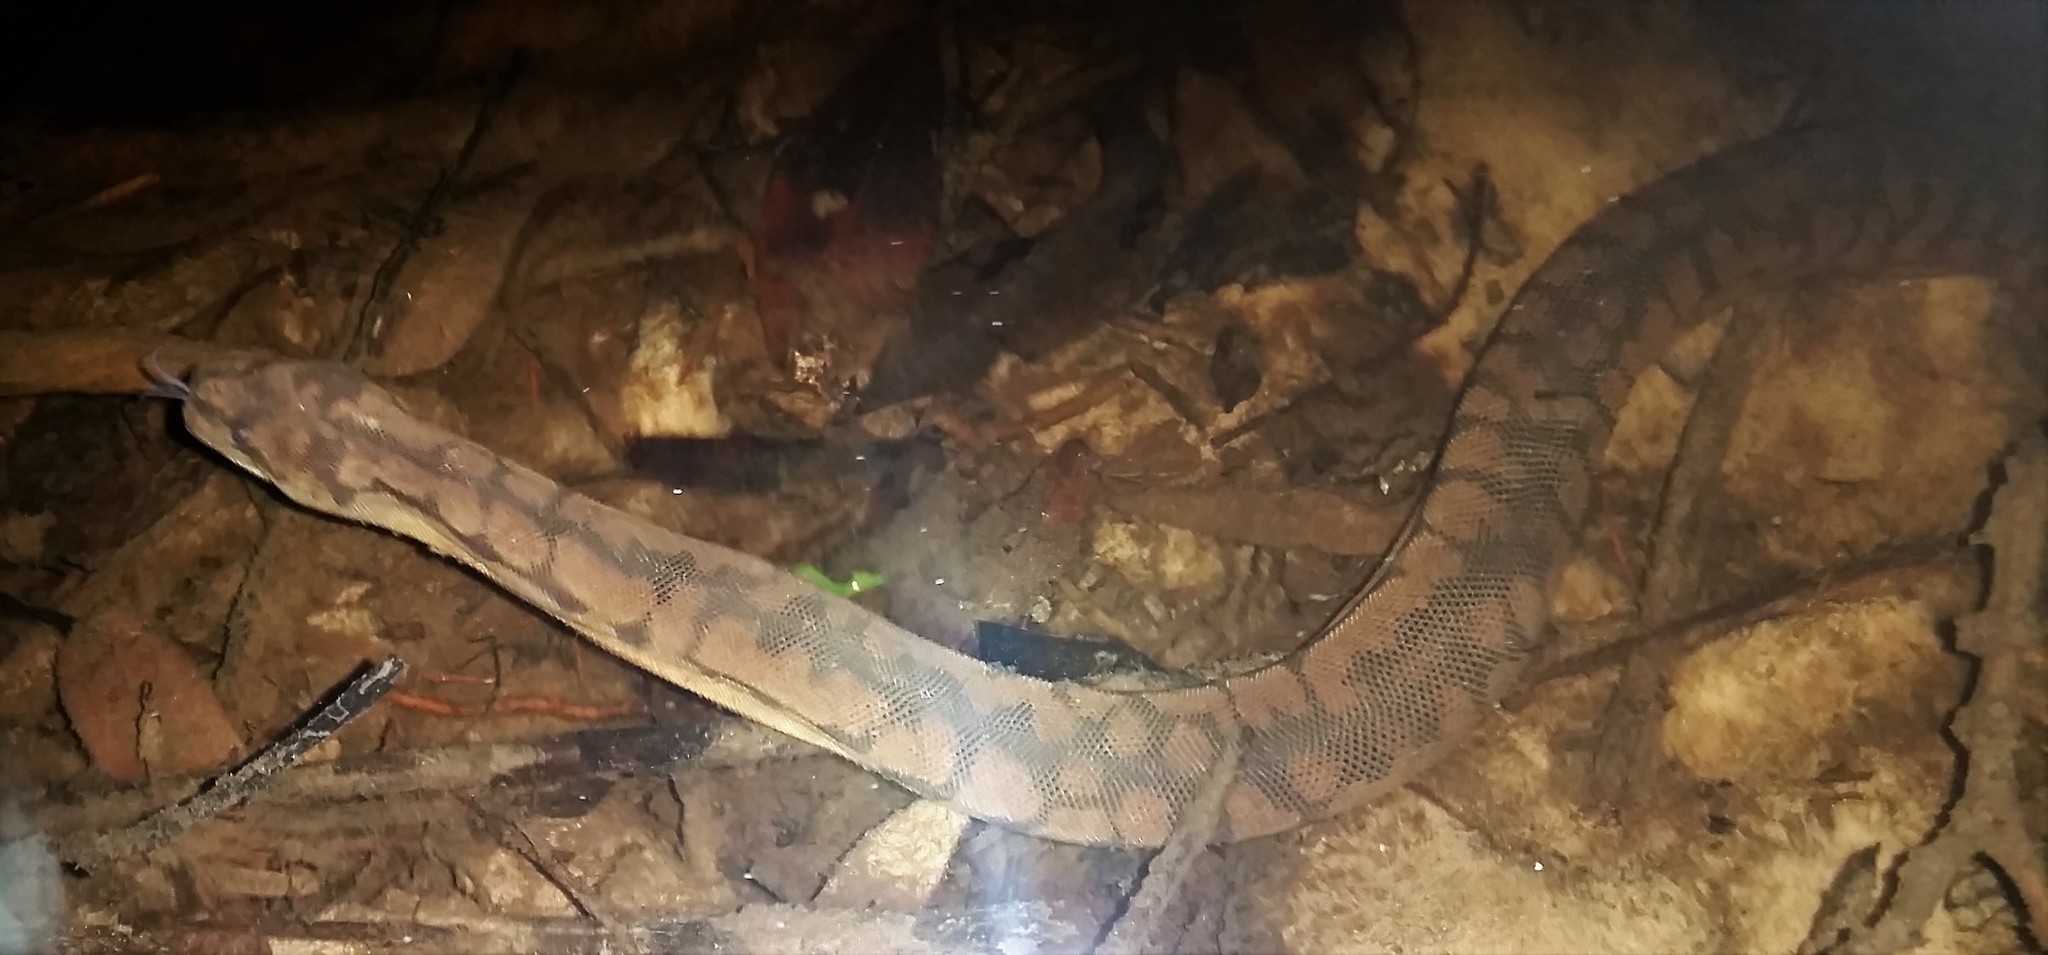 Image of Arafura File Snake